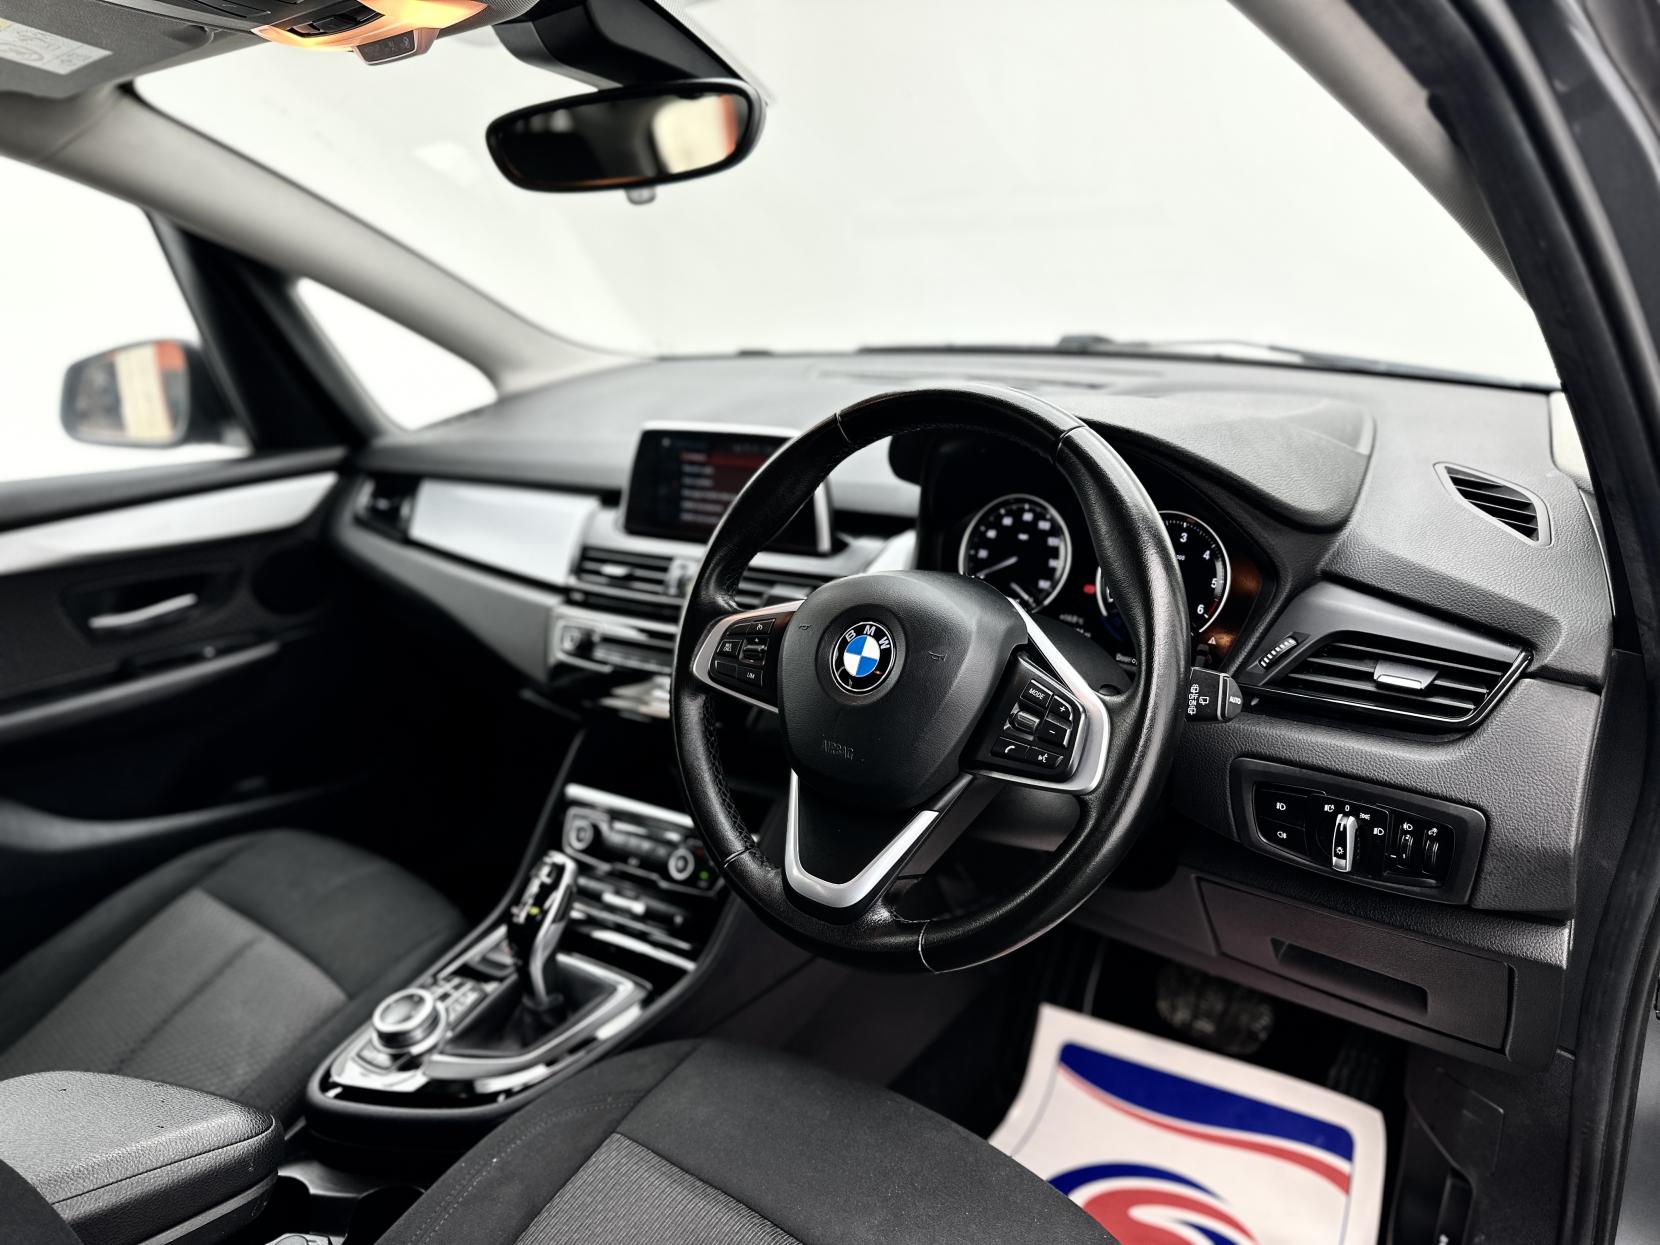 BMW 2 Series Active Tourer 1.5 216d SE MPV 5dr Diesel DCT Euro 6 (s/s) (116 ps)